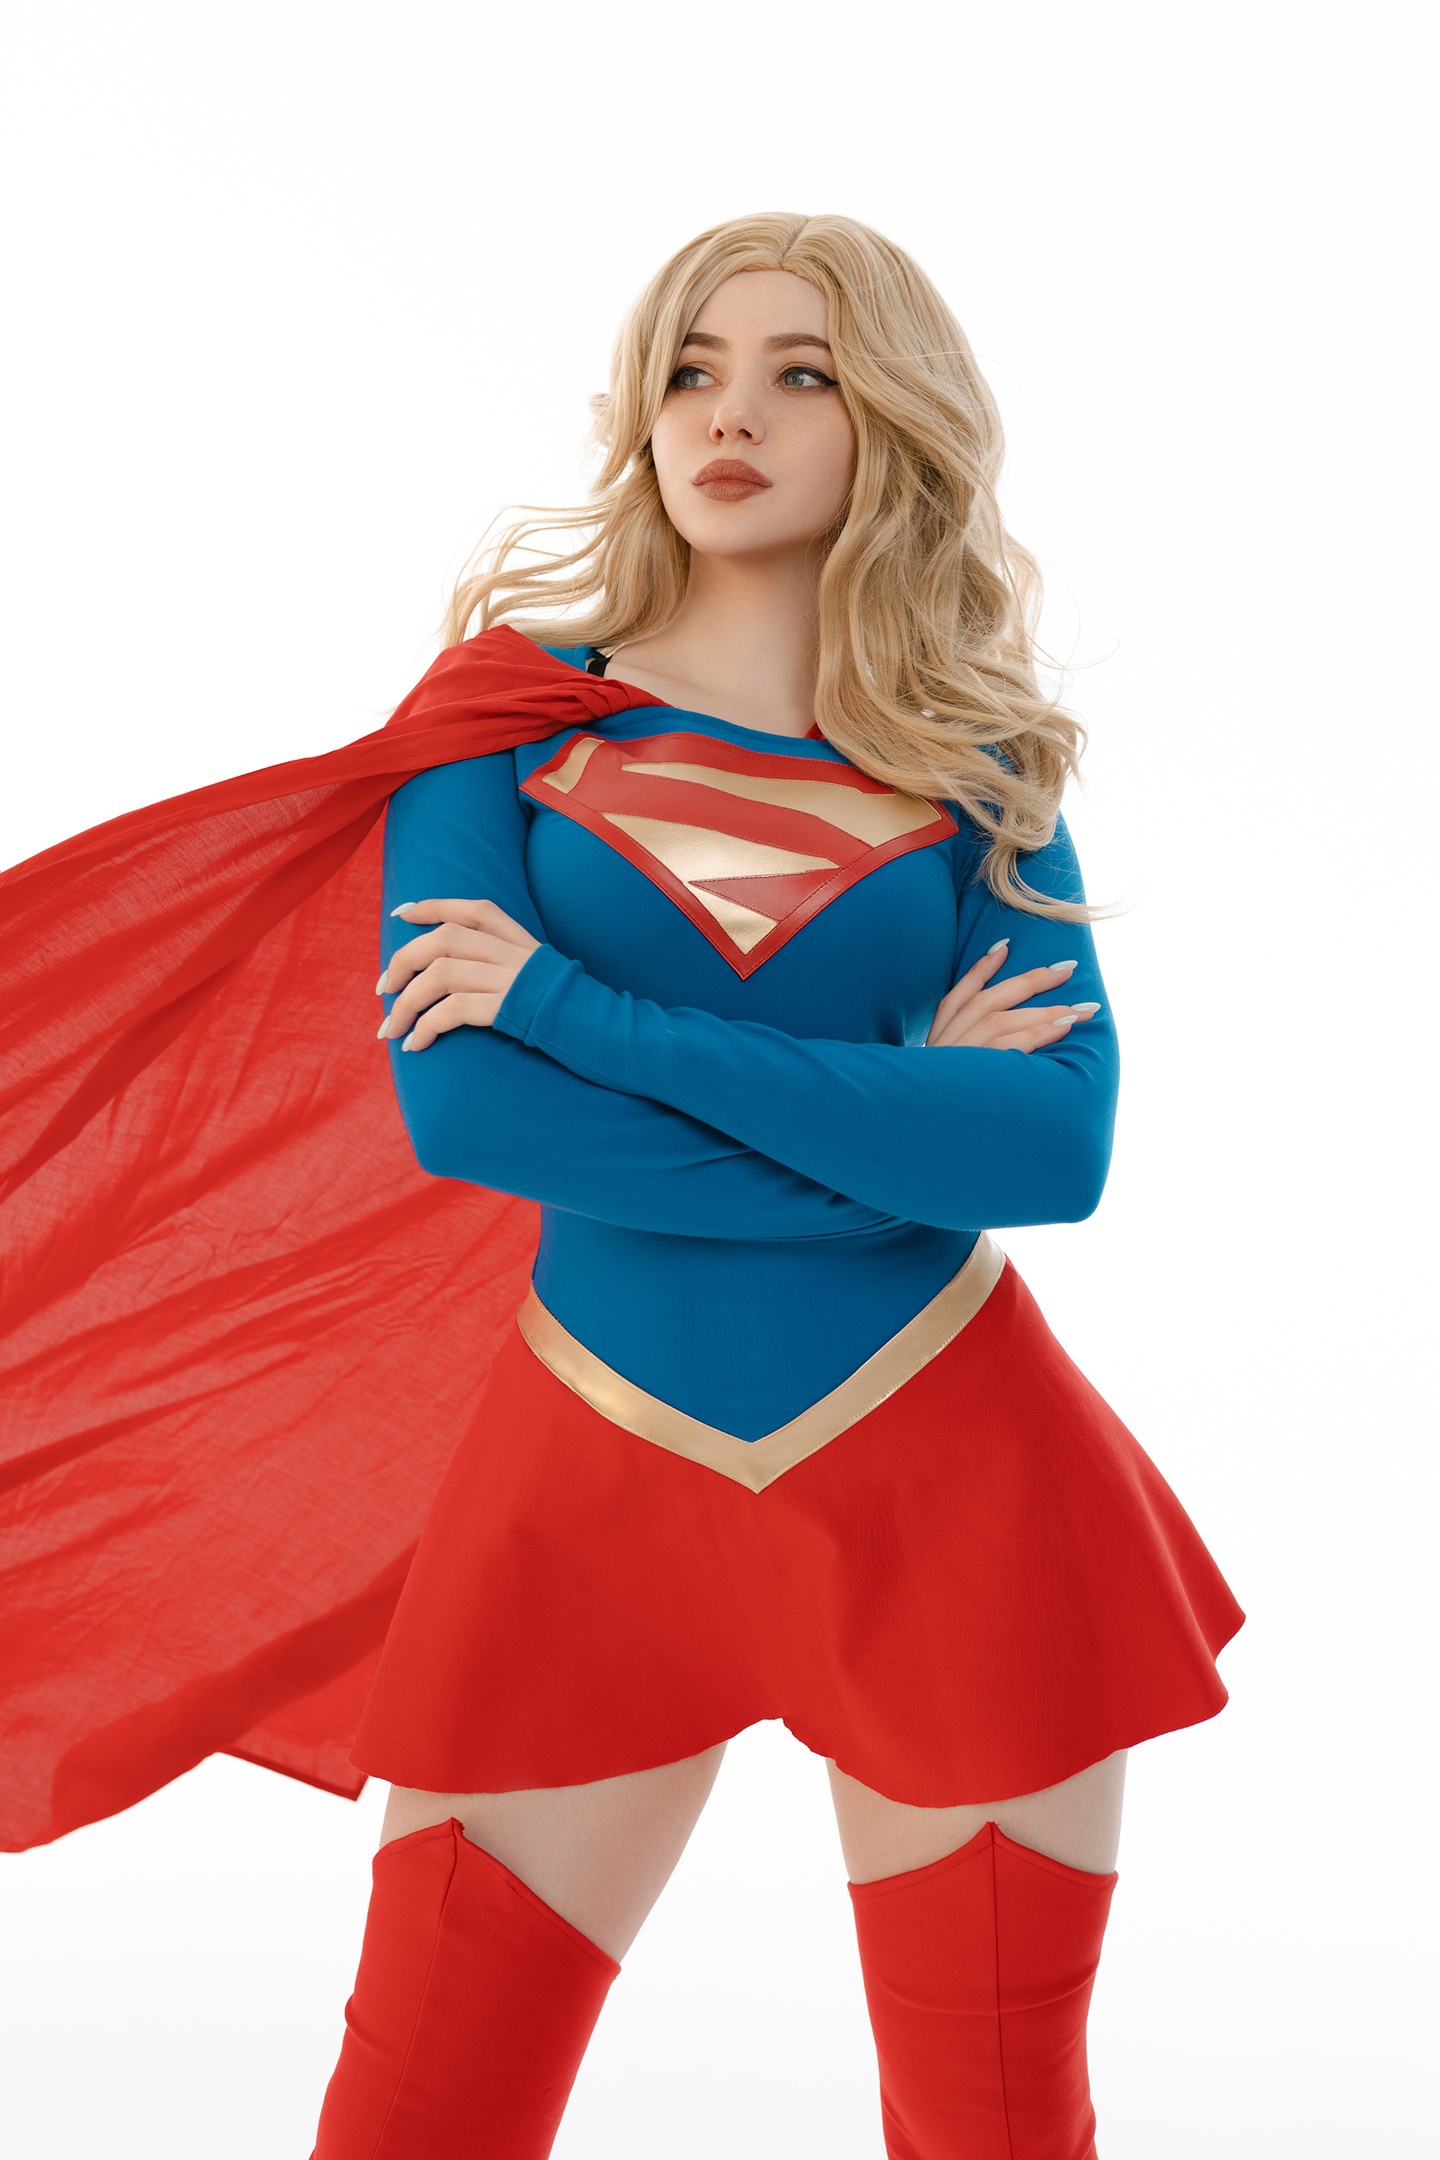 People 1440x2160 Alina Becker women model cosplay Supergirl DC Comics studio indoors women indoors